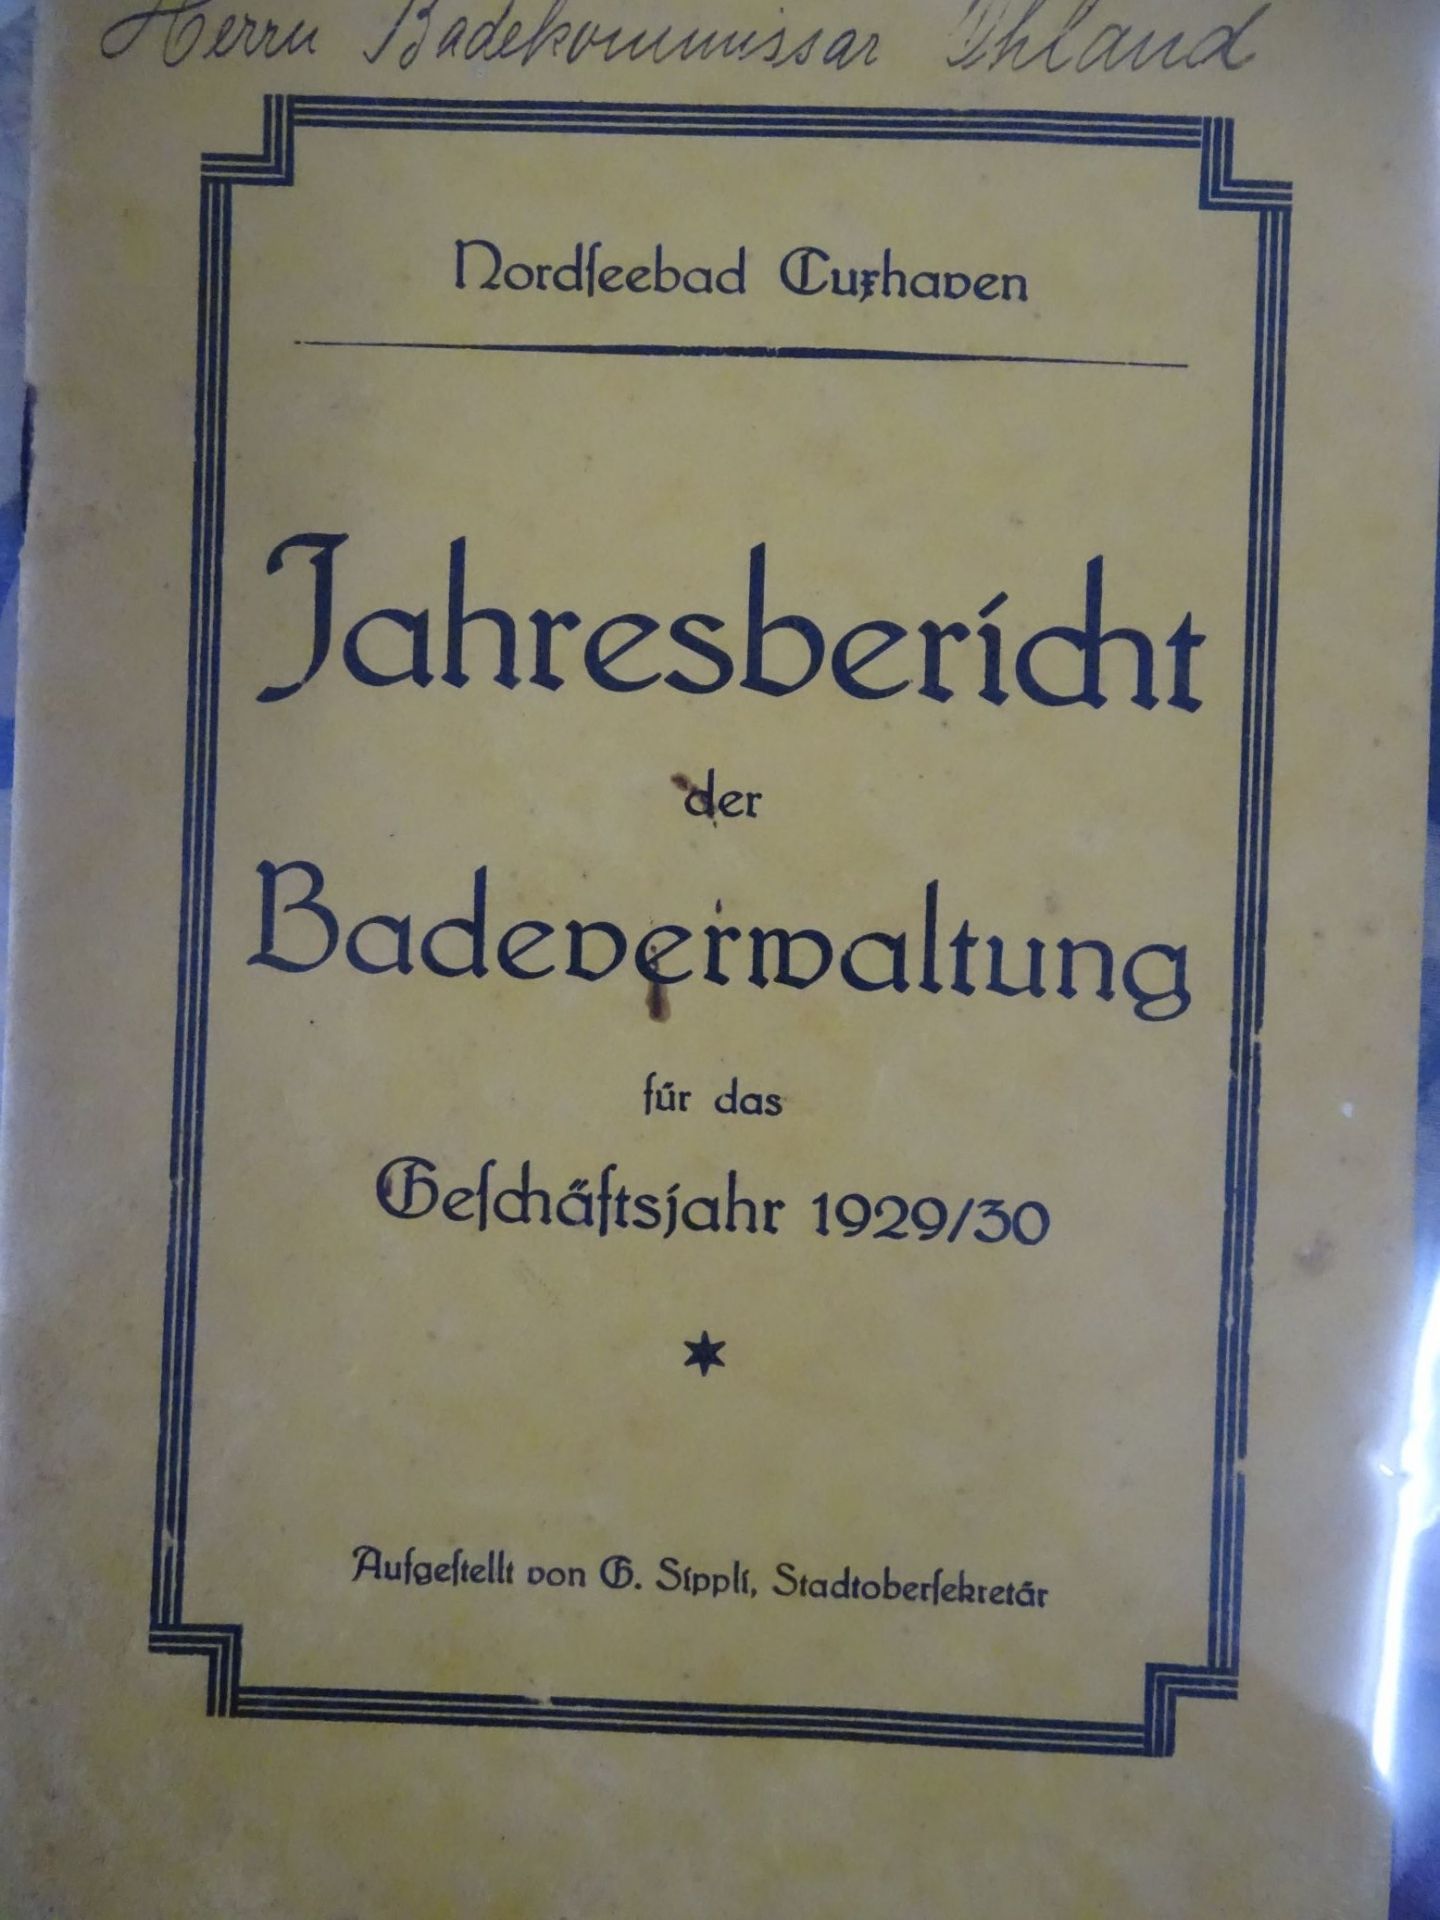 4x Broschüren der Bäderverwaltung etc.um 1920/30, PP Jahresberichte us- - -22.61 % buyer's premium - Bild 2 aus 5